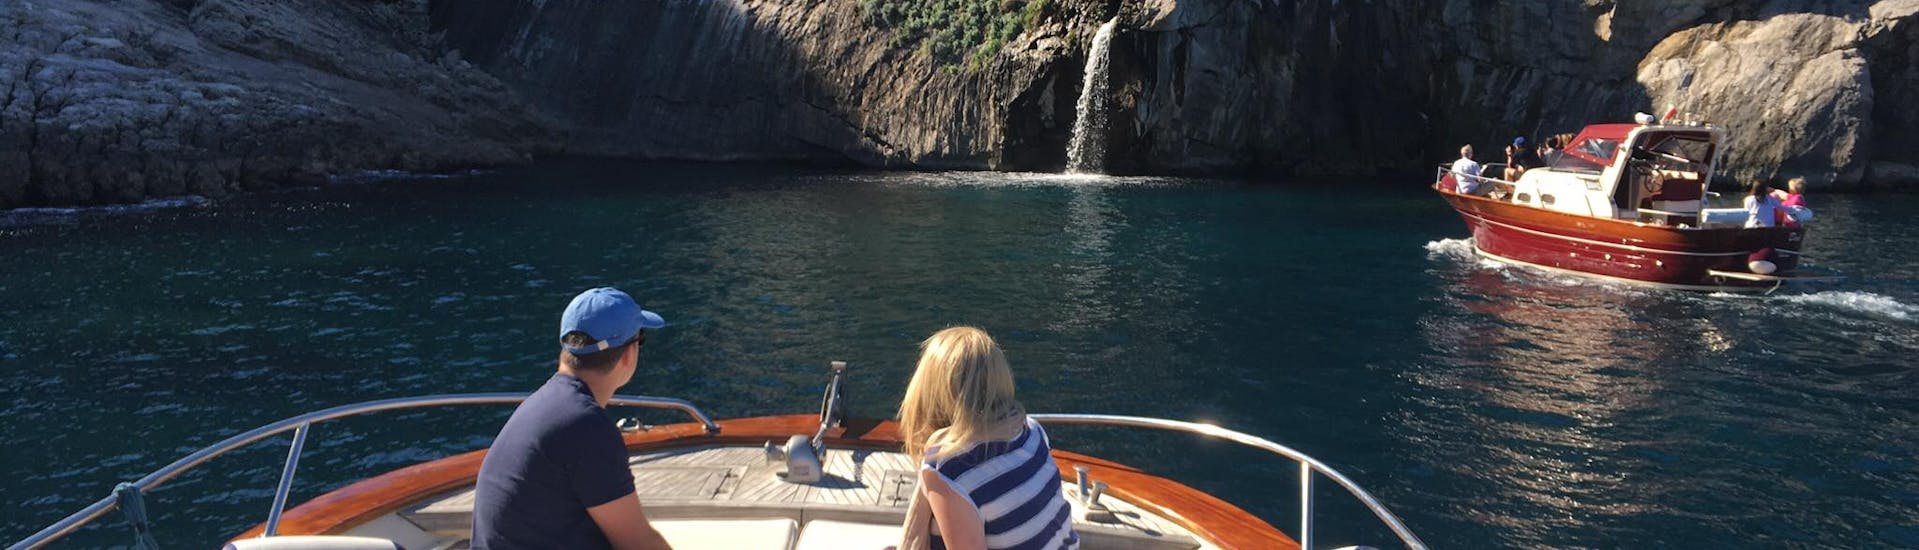 Una famiglia si gode la vista della cascata durante la gita in barca da Sorrento a Capri e Grotta Azzurra con Lubrense Boat.